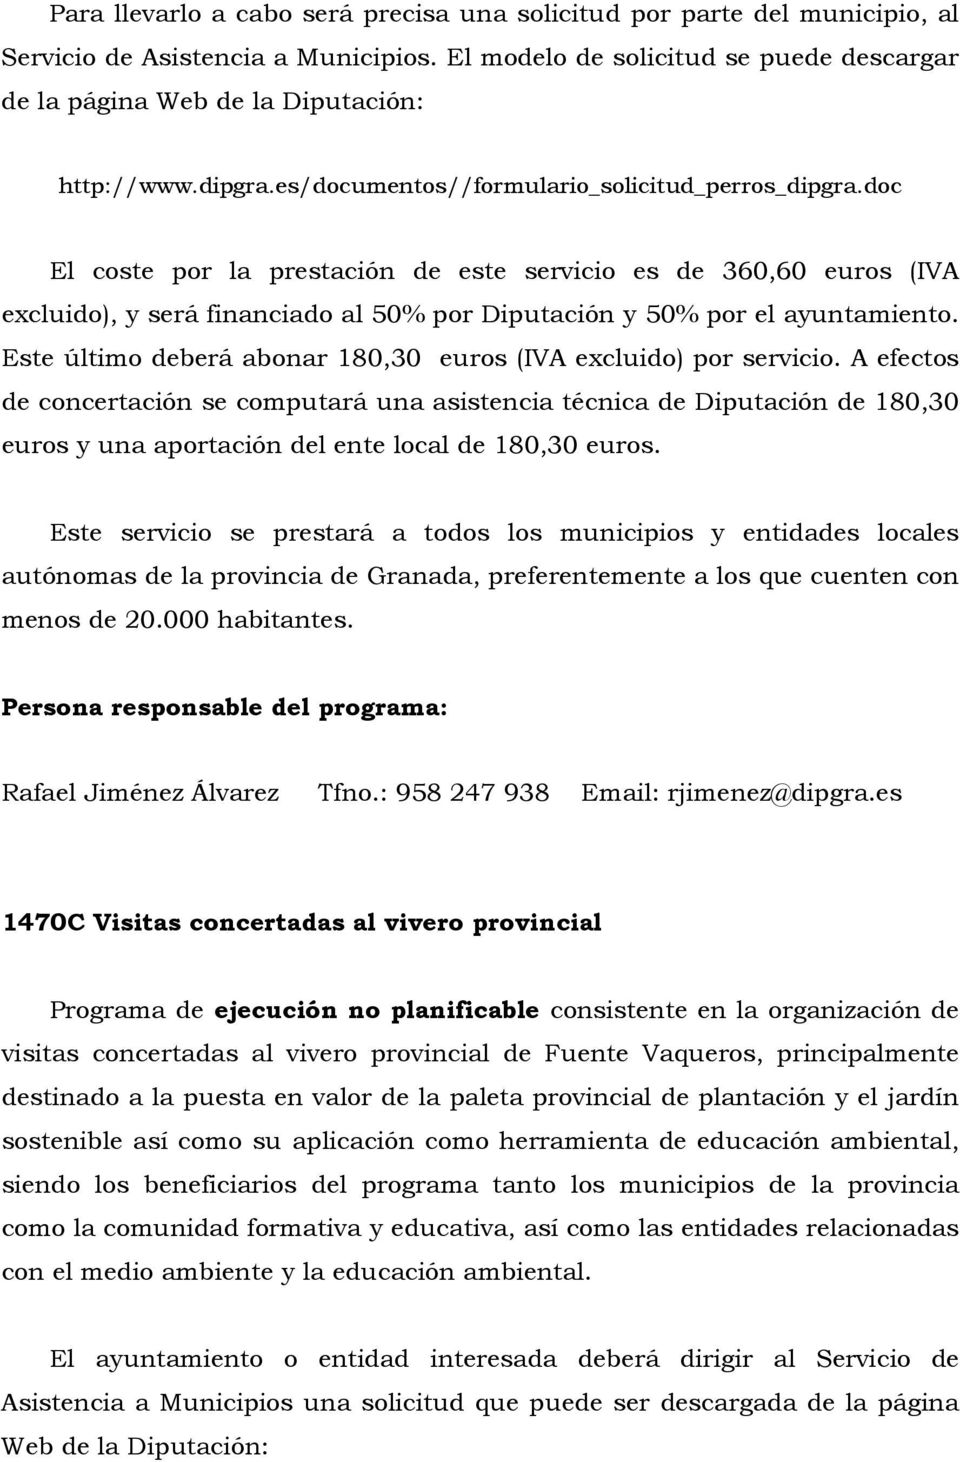 doc El coste por la prestación de este servicio es de 360,60 euros (IVA excluido), y será financiado al 50% por Diputación y 50% por el ayuntamiento.